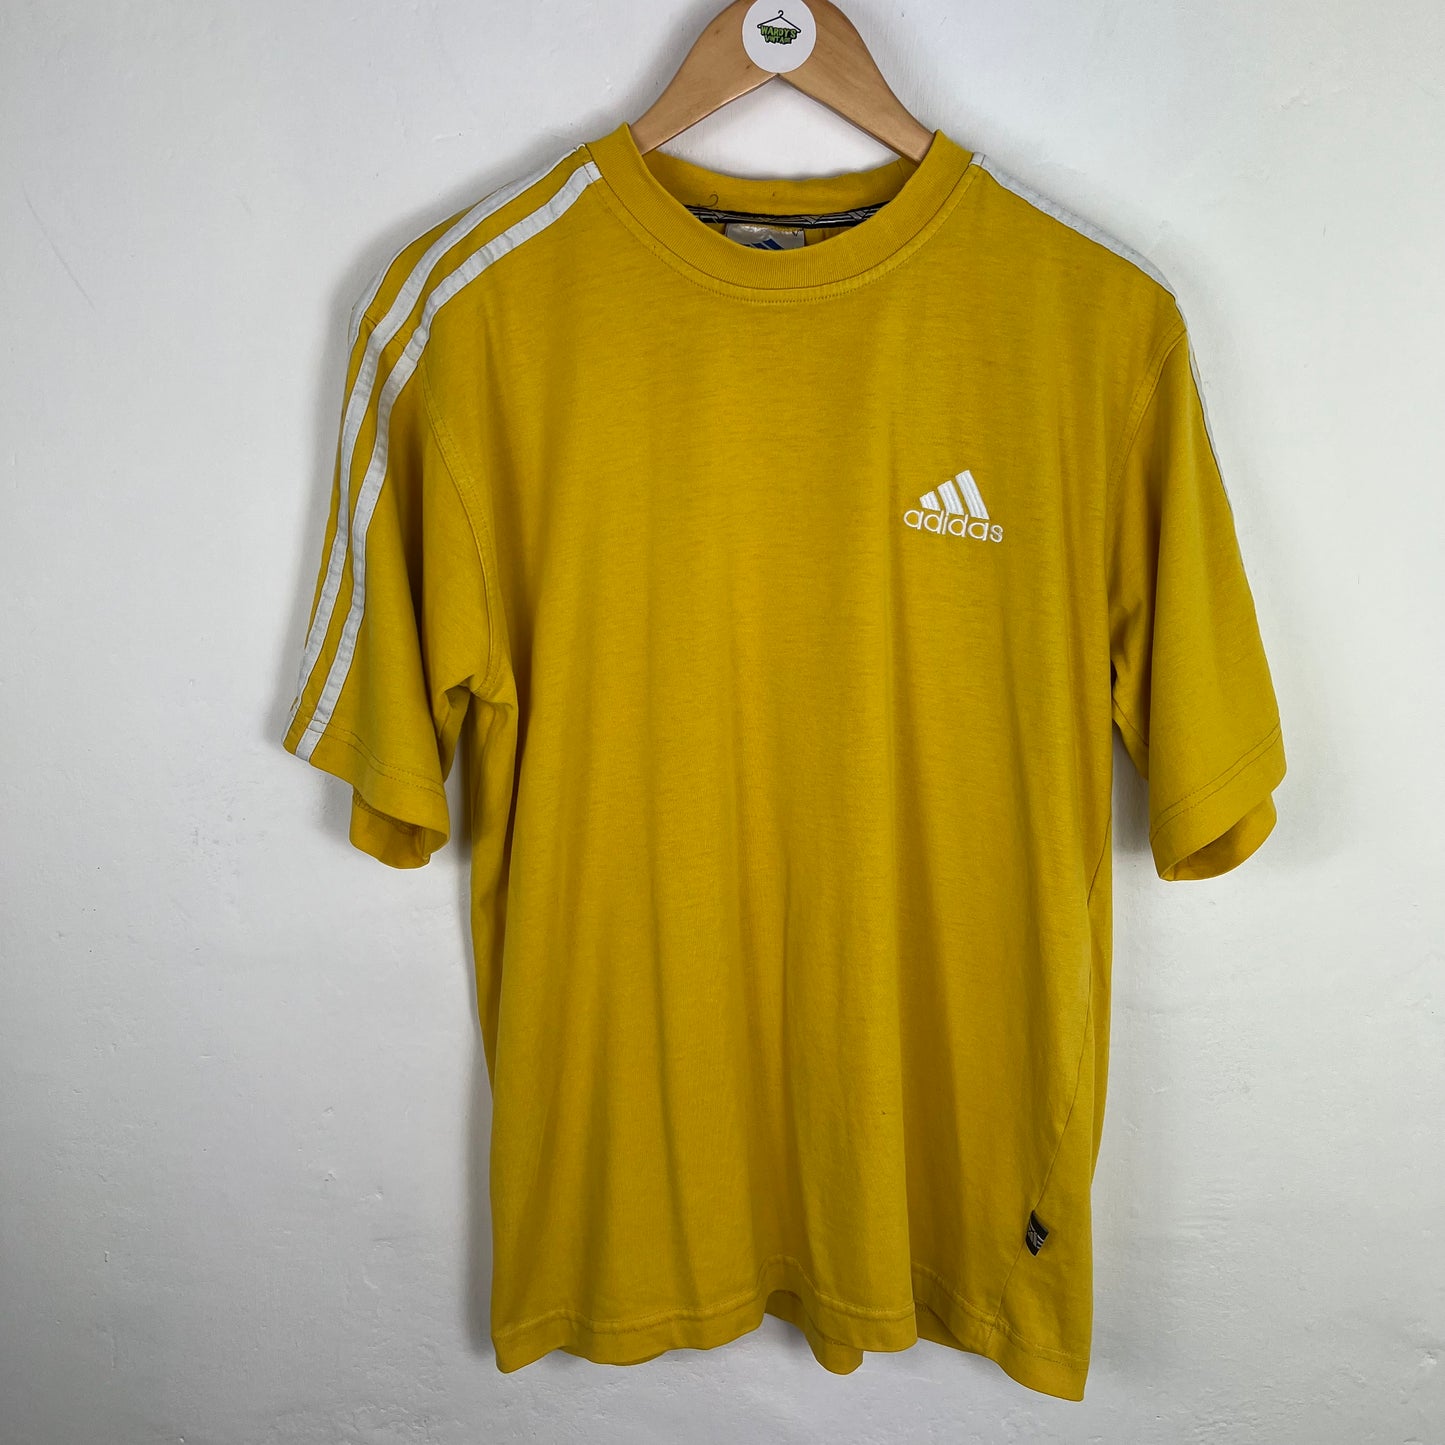 Adidas 90s t shirt medium